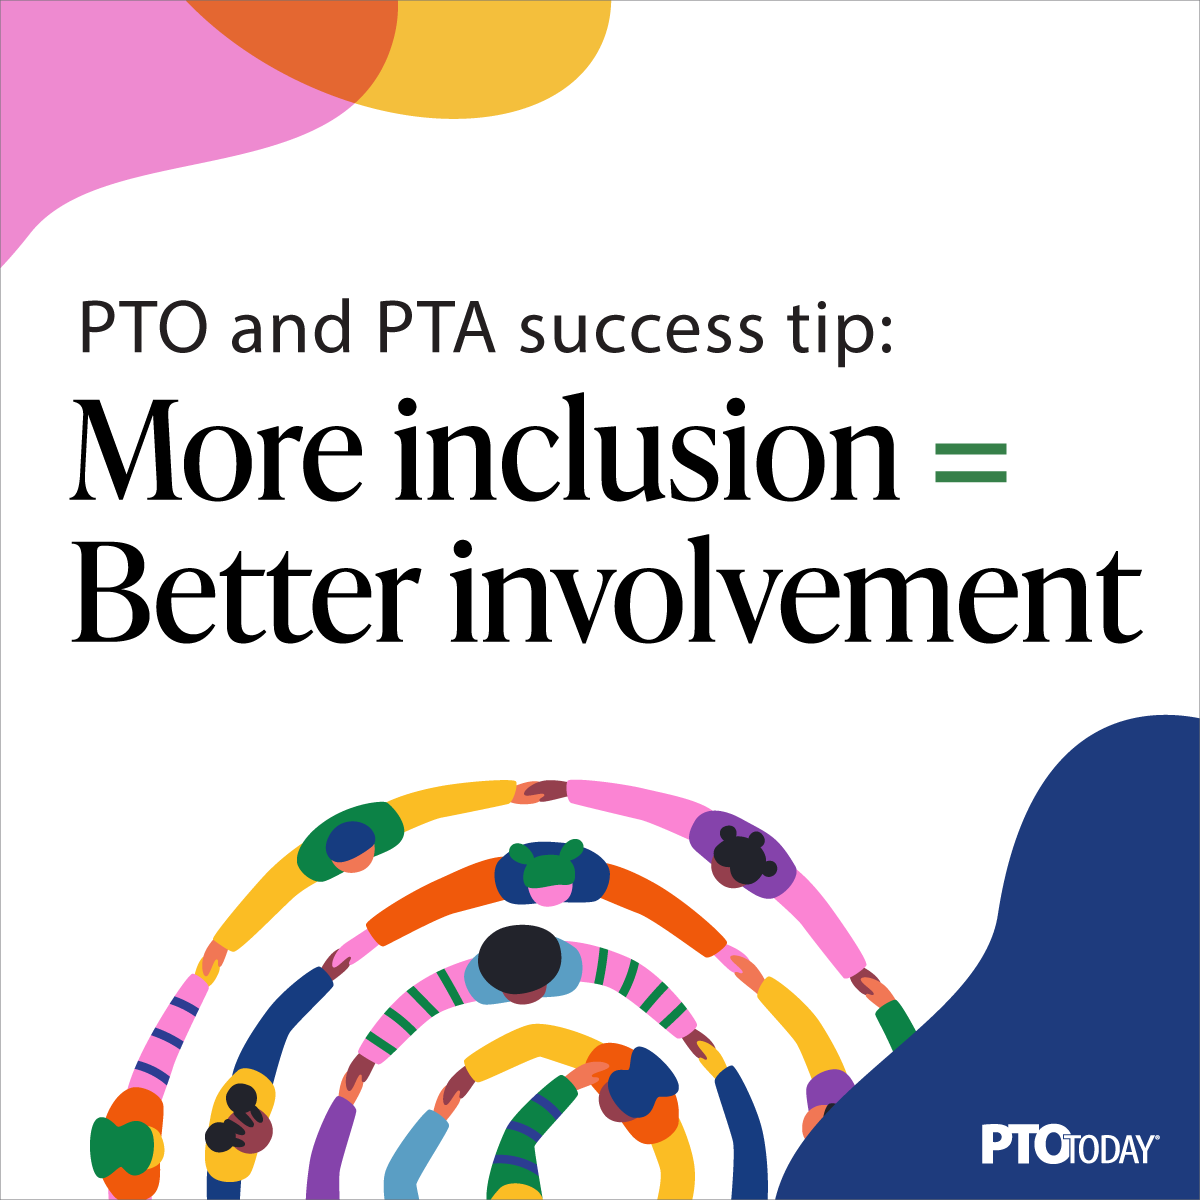 More inclusion = better involvement